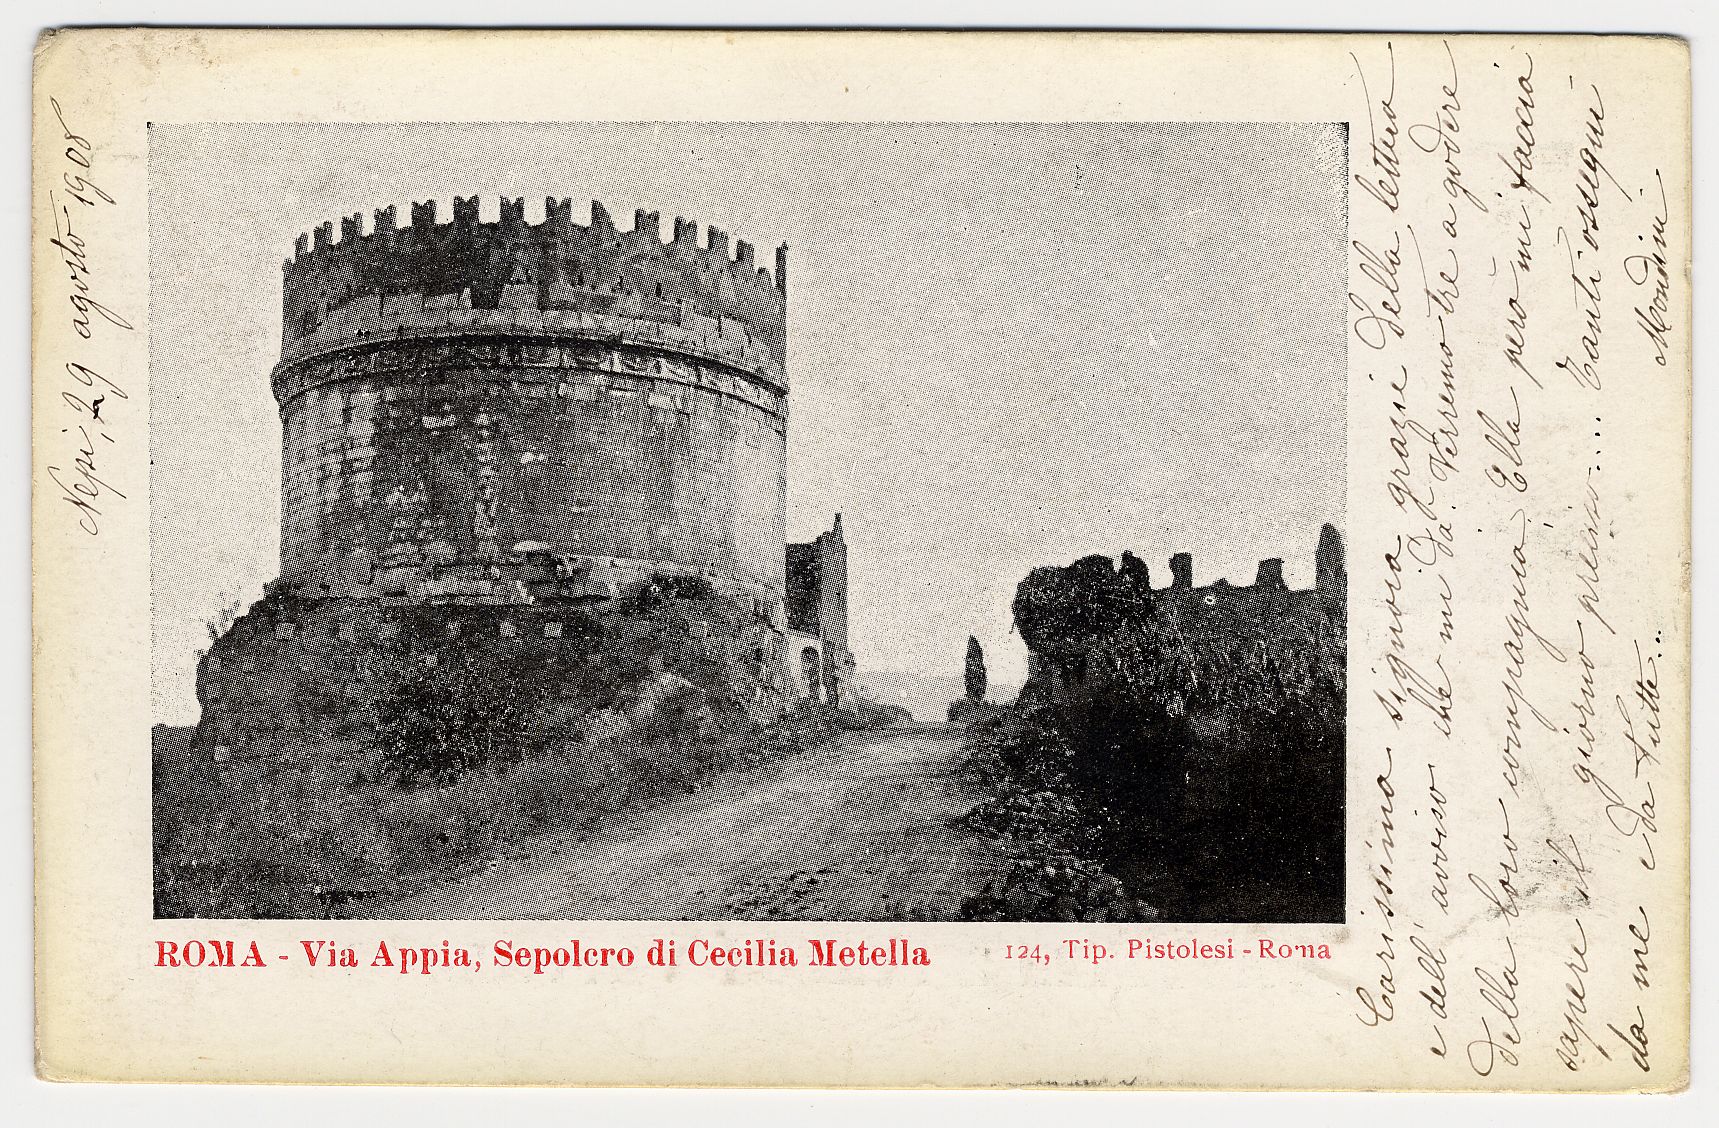 Cartolina con immagine della Tomba di Cecilia Metella e della via Appia Antica